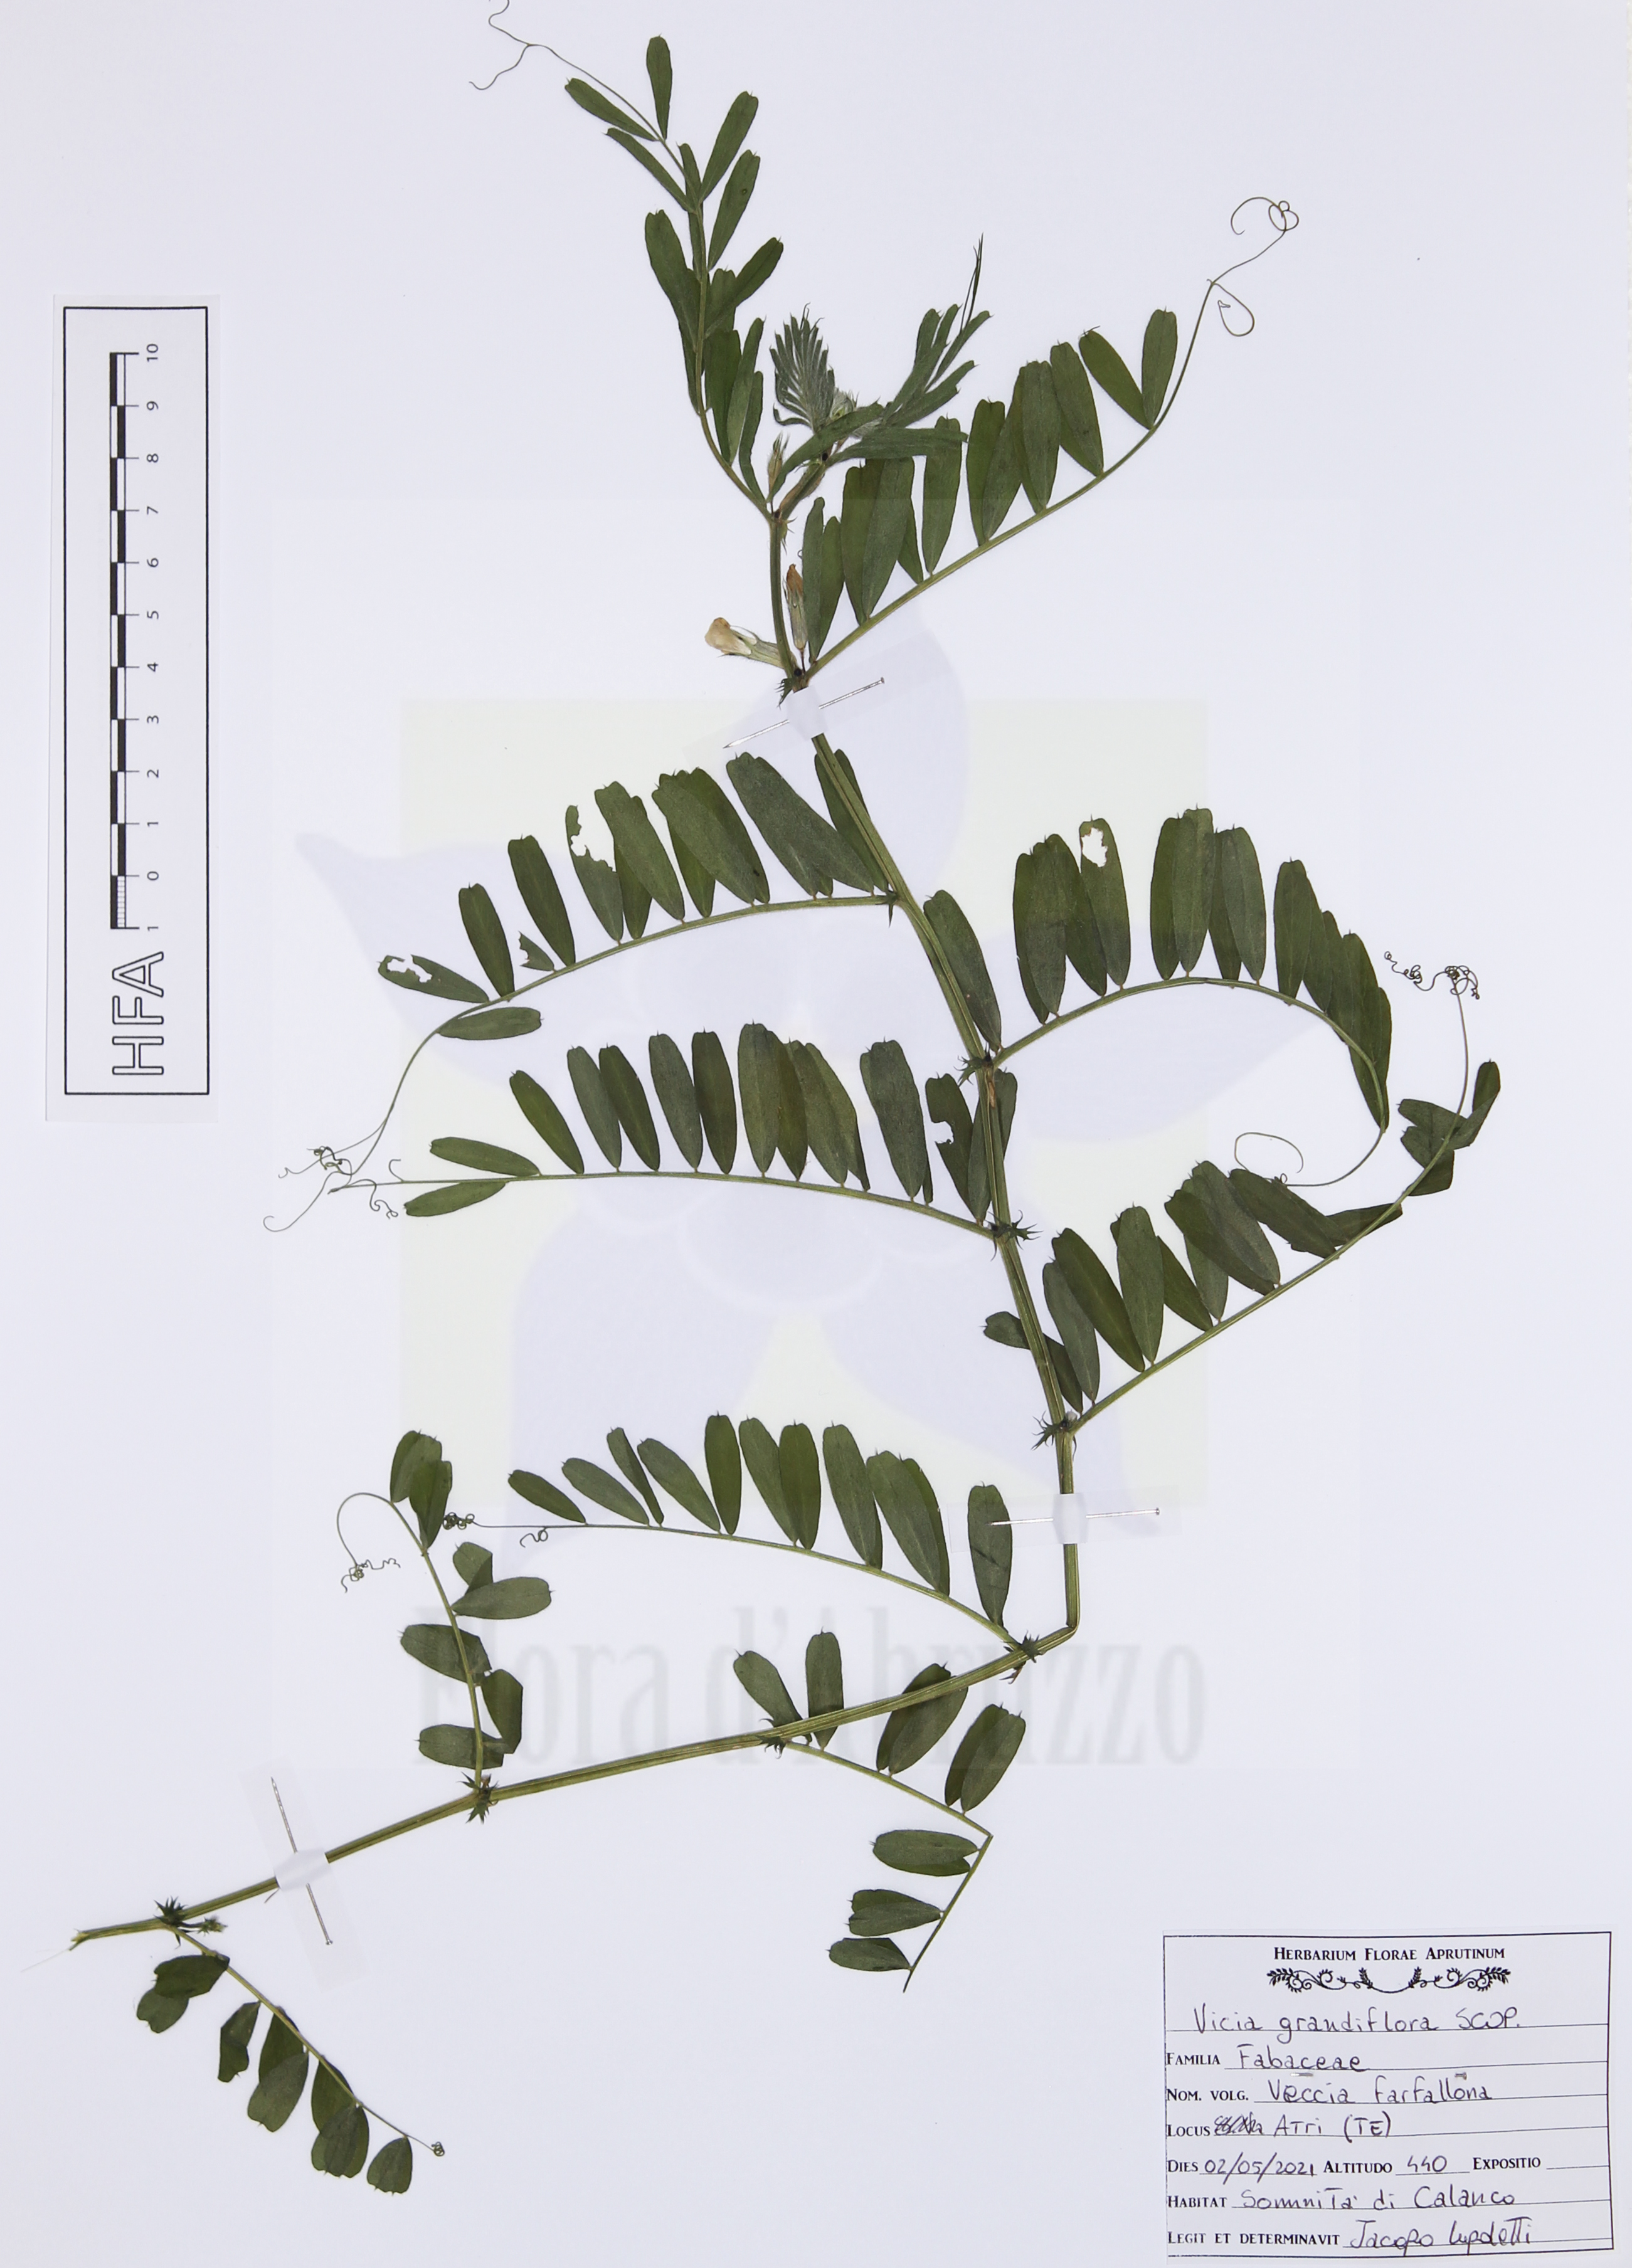 Vicia grandiflora Scop.